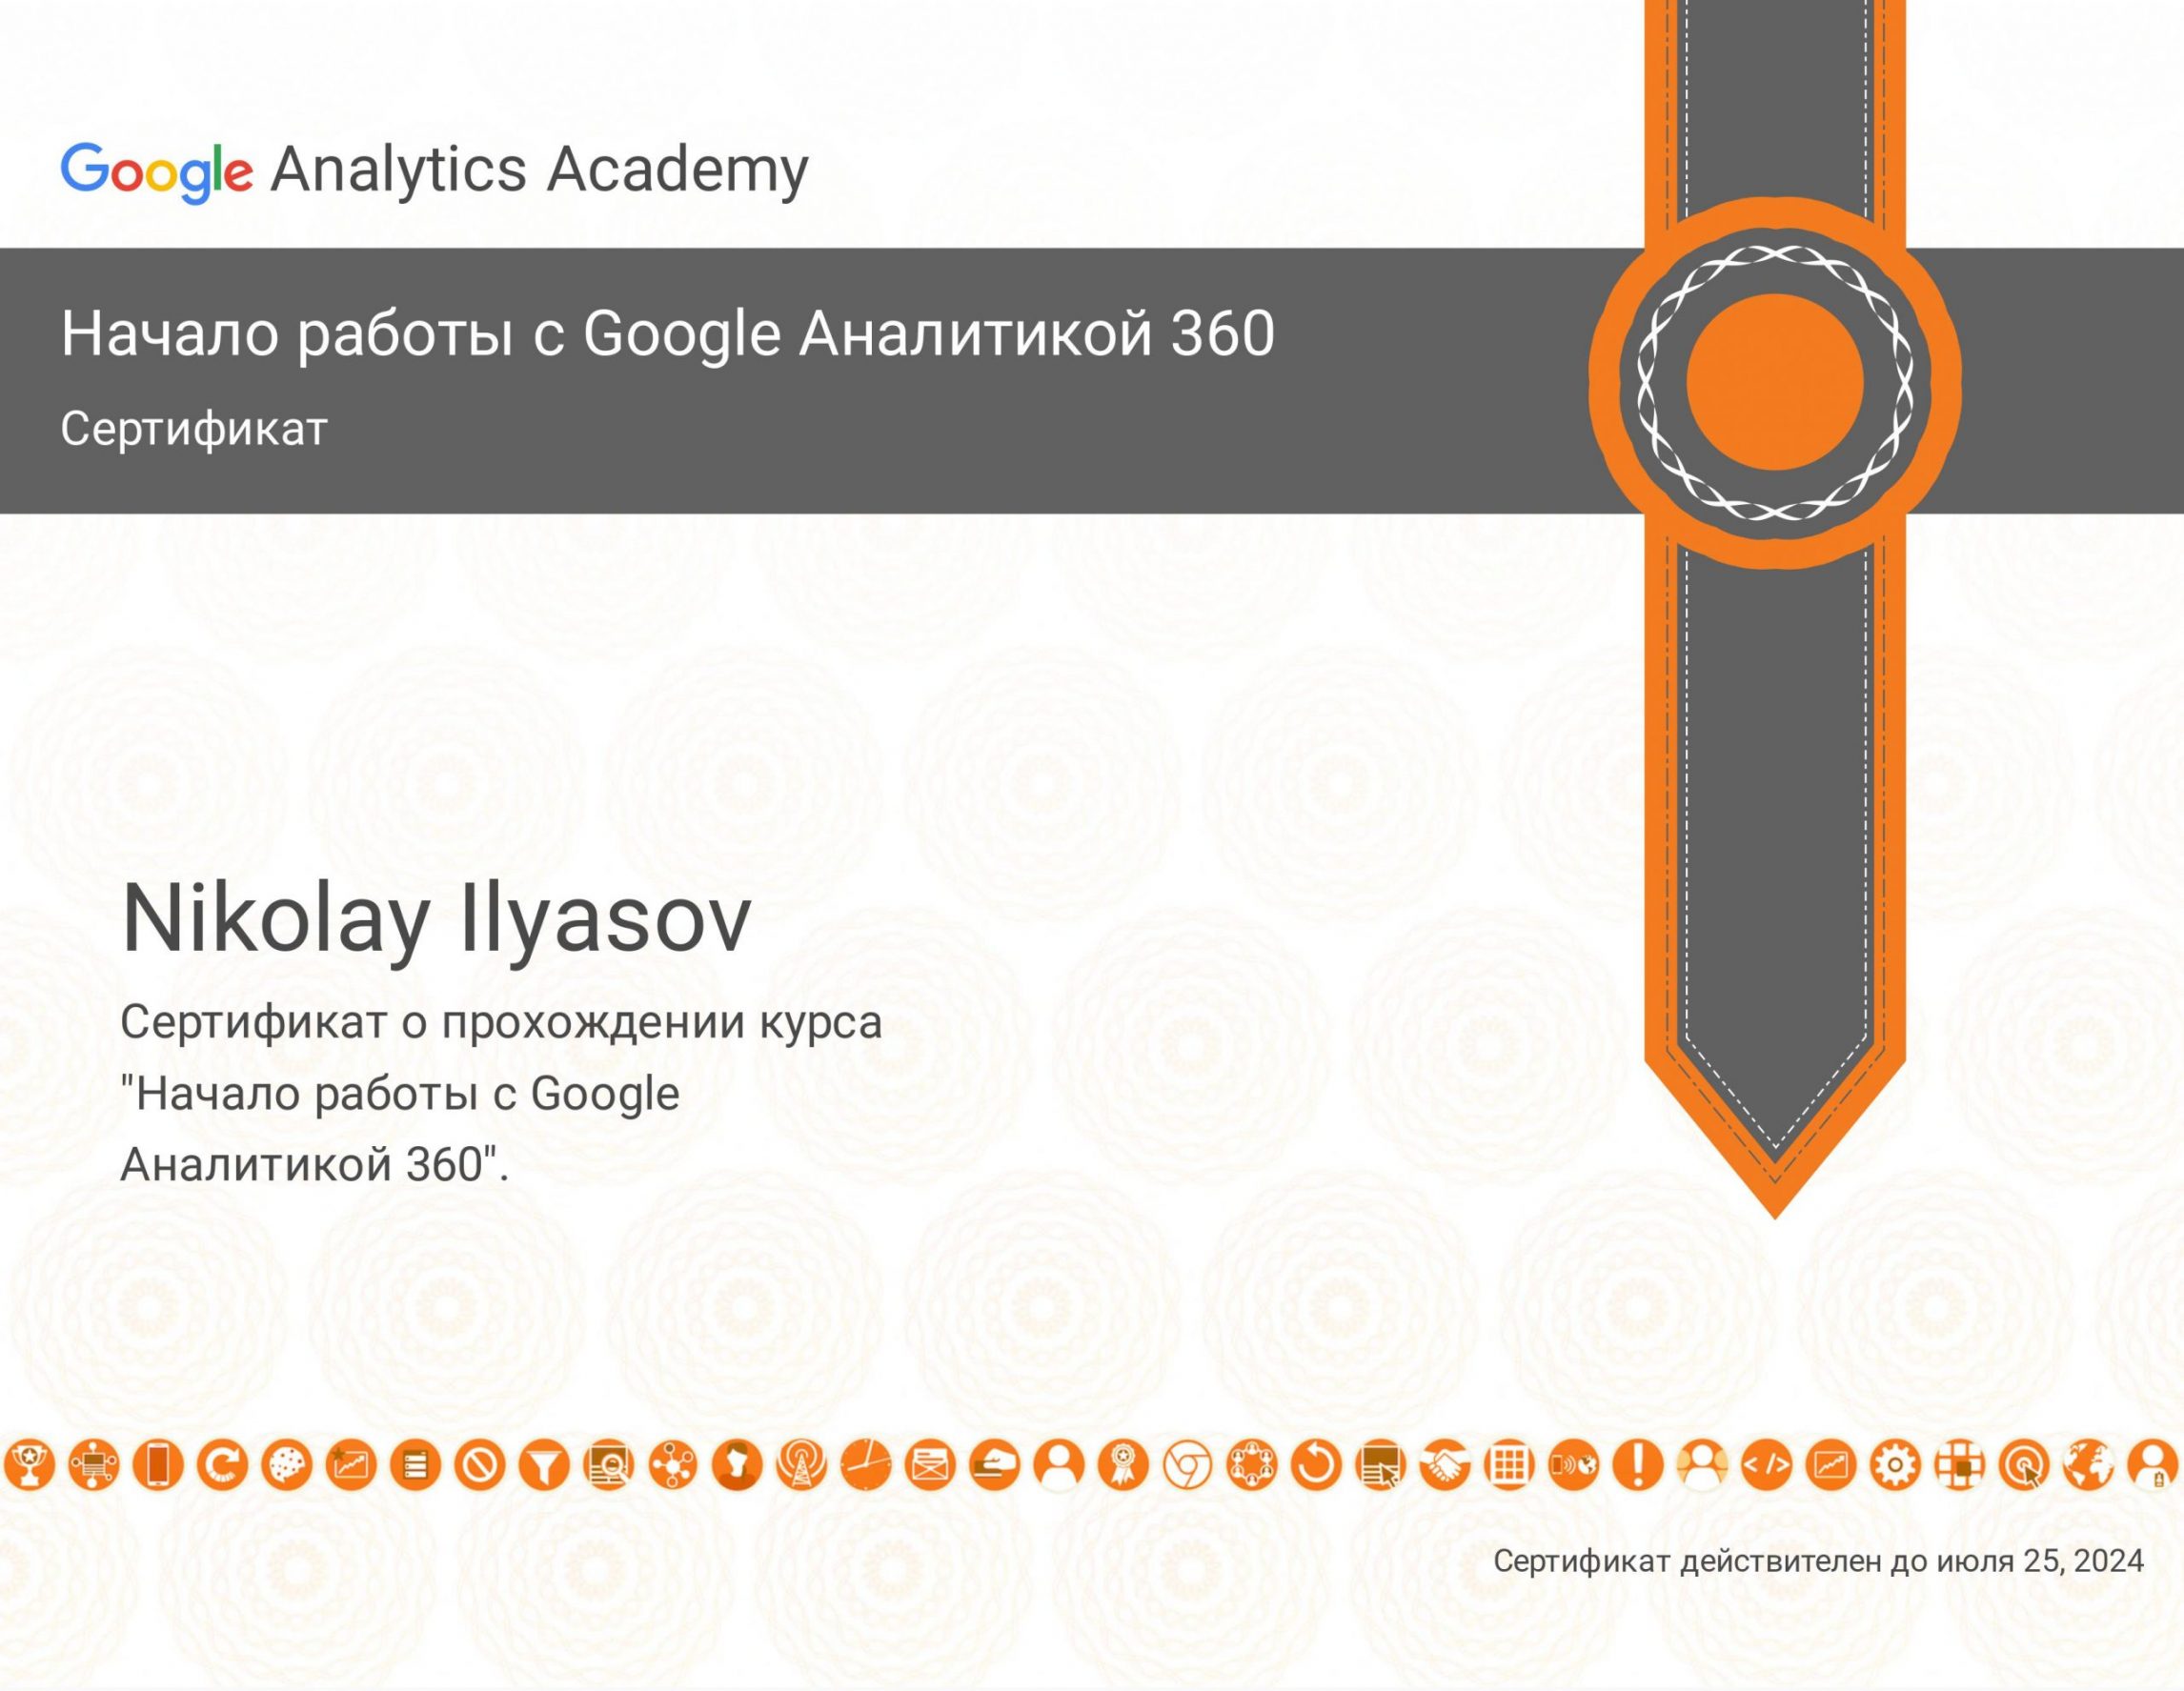 Ильясов Николай - сертификат